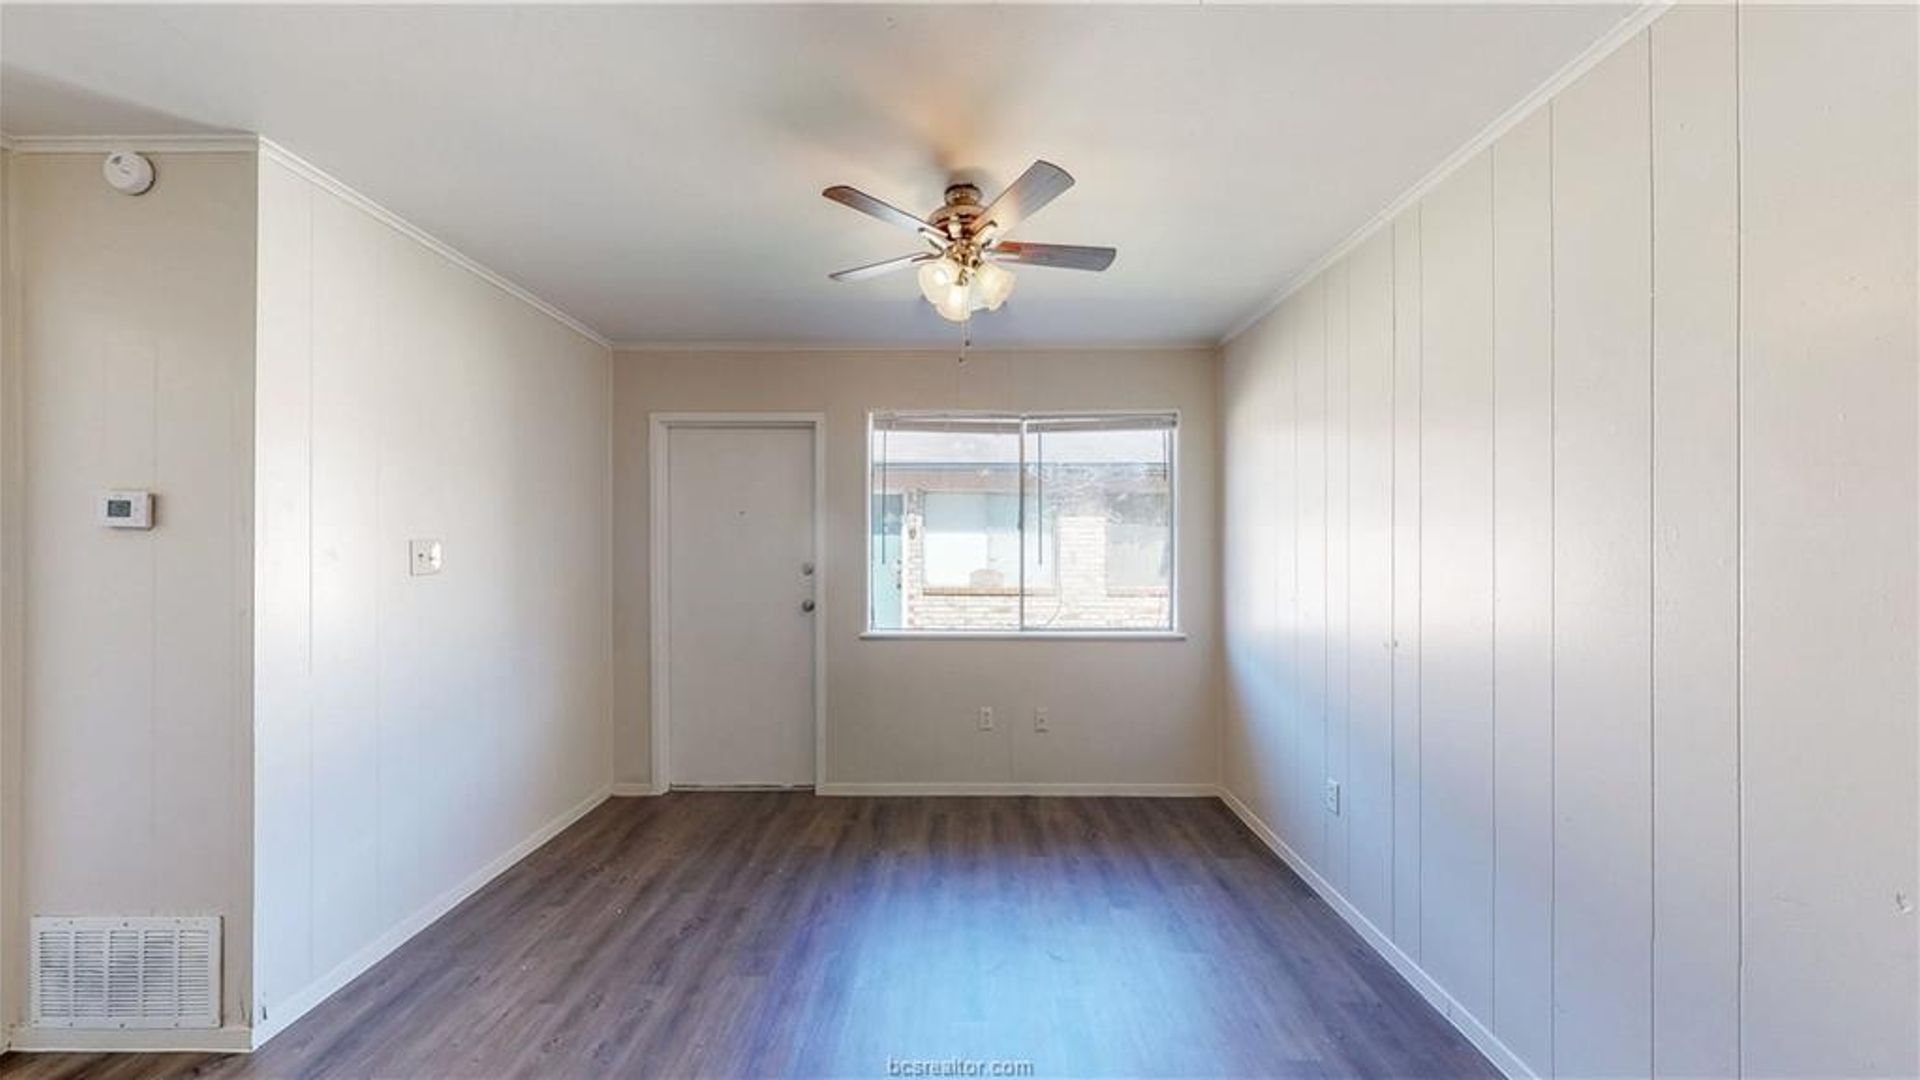 2 bedroom duplex at 208 Lynn Drive, Bryan, TX 77801, USA | MLS